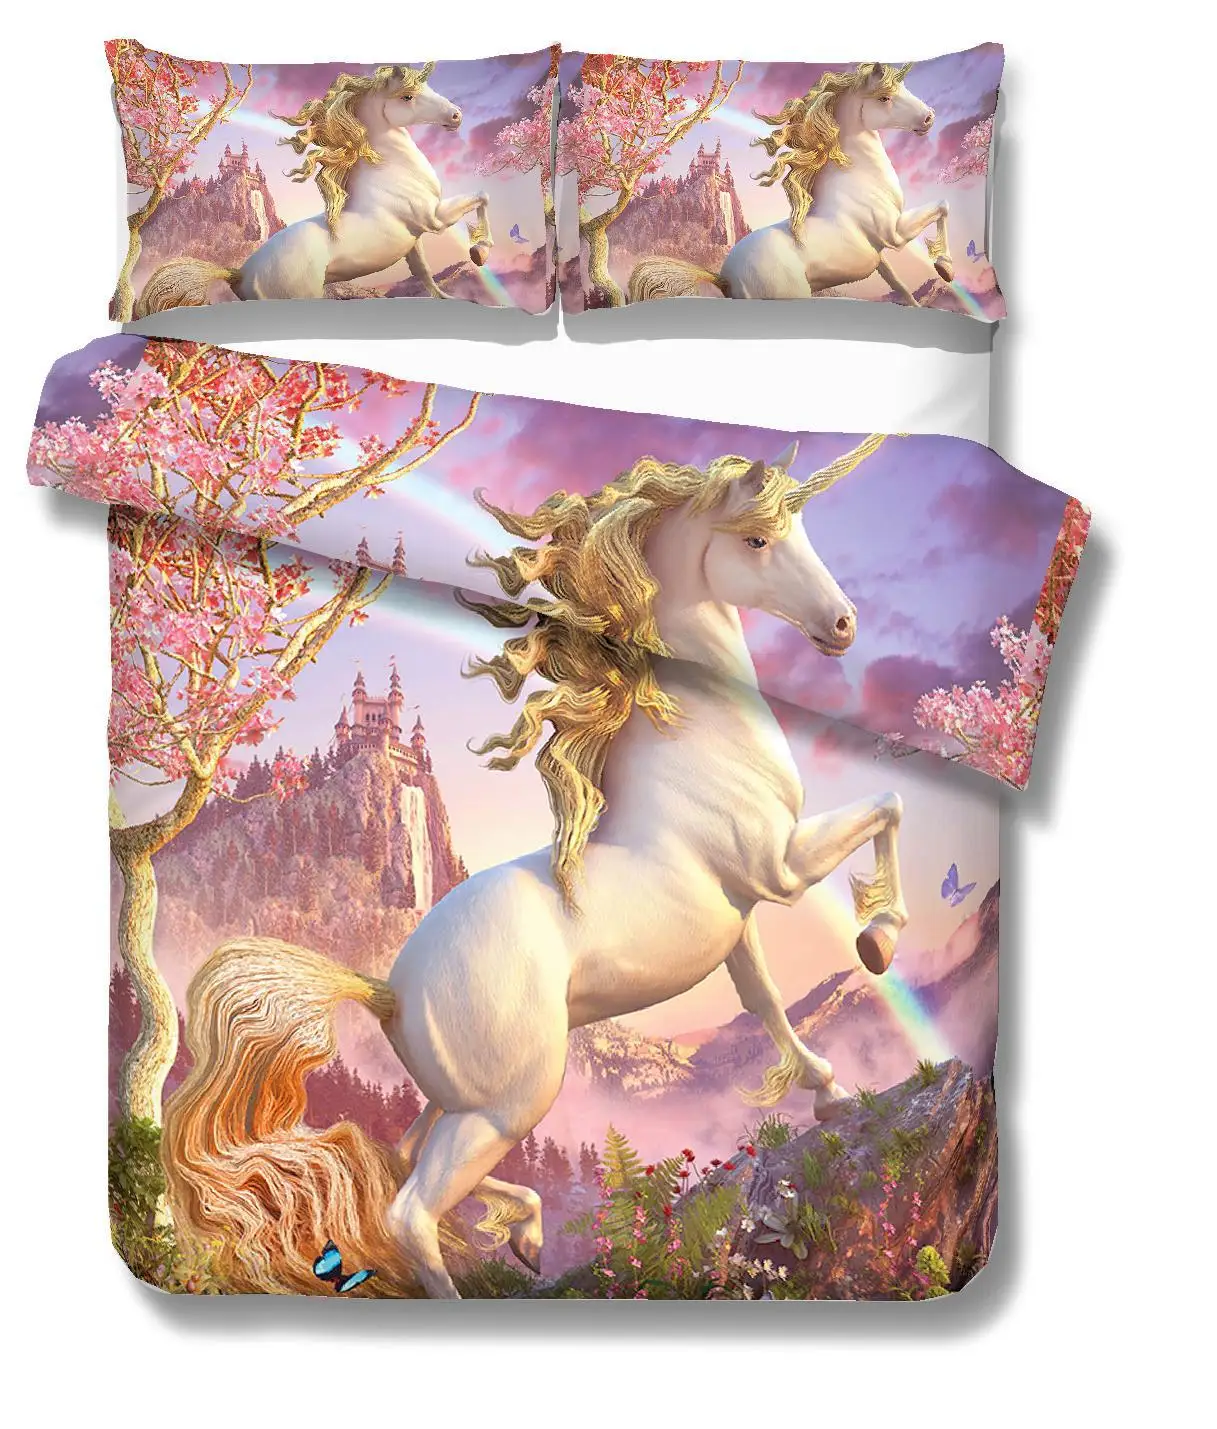 Лучшее. WENSD, качественное милое одеяло для кровати с единорогом, цветное постельное белье принцессы, розовый комплект постельного белья для детей и взрослых